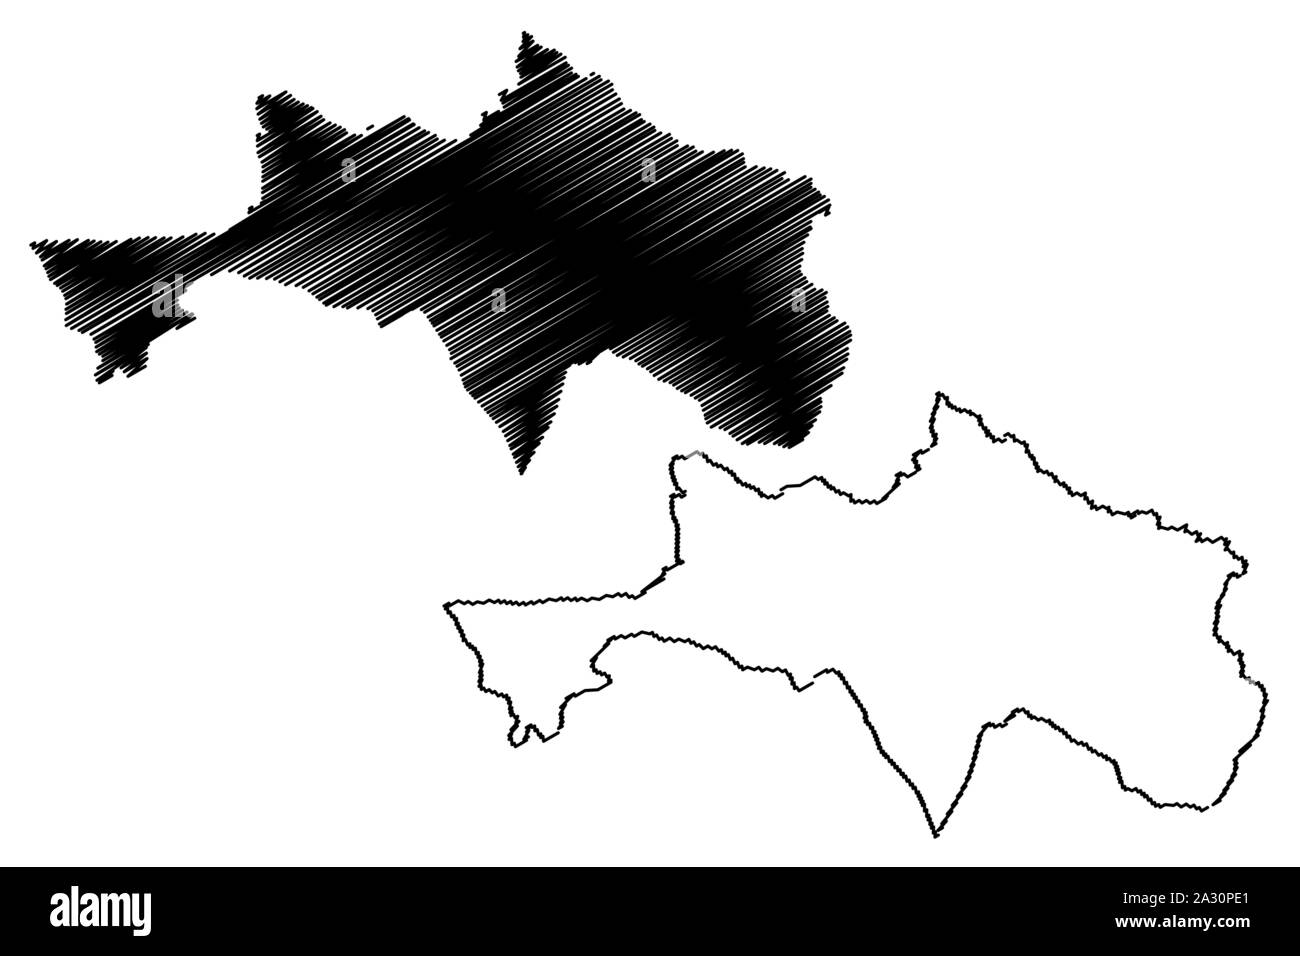 La province de Bolikhamsai (République démocratique populaire du Laos, Muang Lao, Provinces du Laos) map vector illustration croquis Borikhamxay, scribble map Illustration de Vecteur